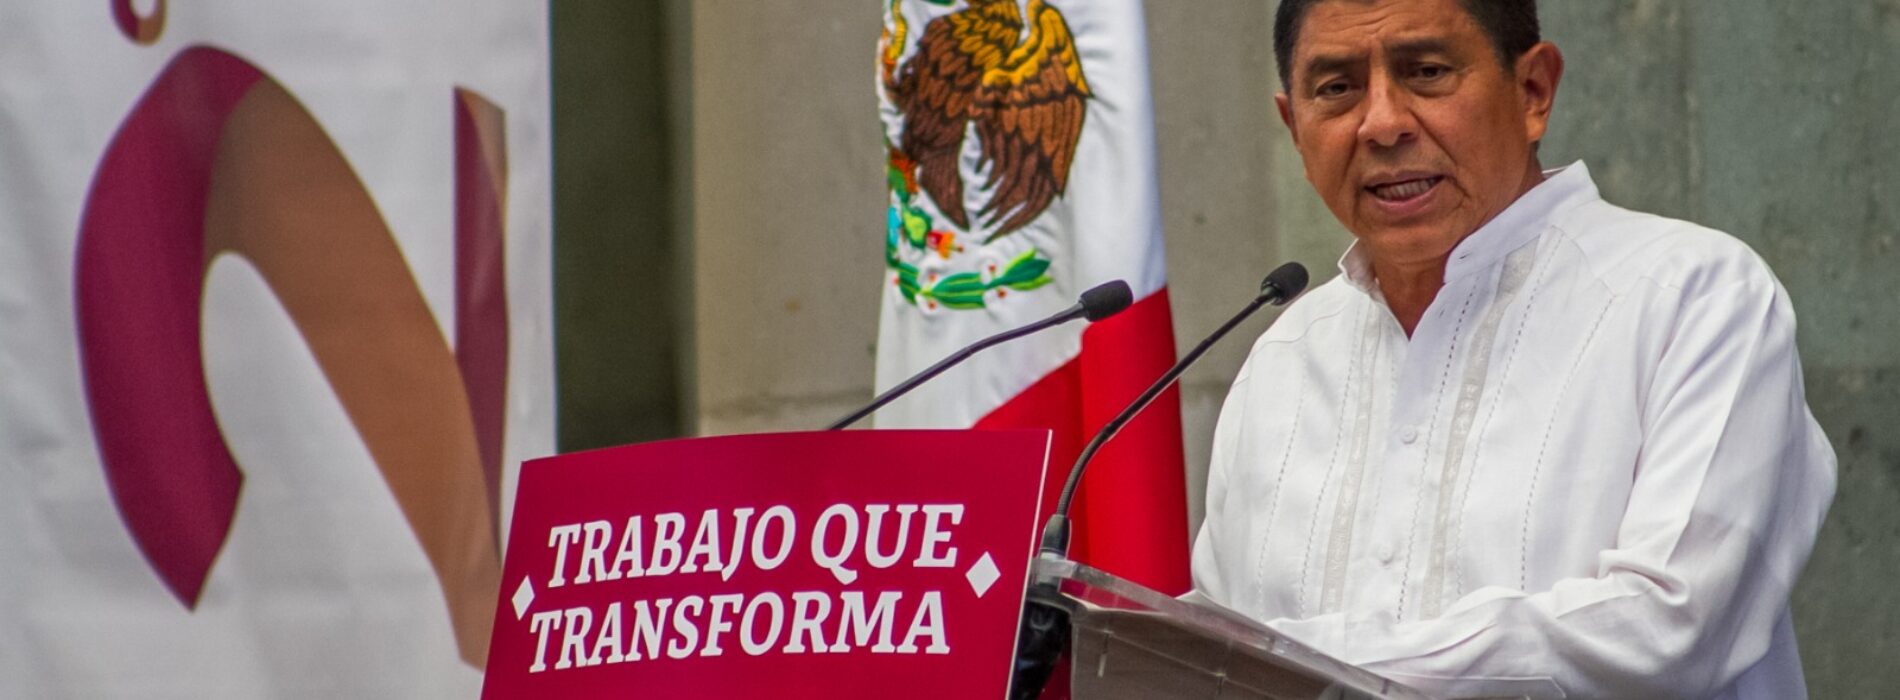 Trabajo que transforma Oaxaca, un compromiso cumplido: Salomón Jara